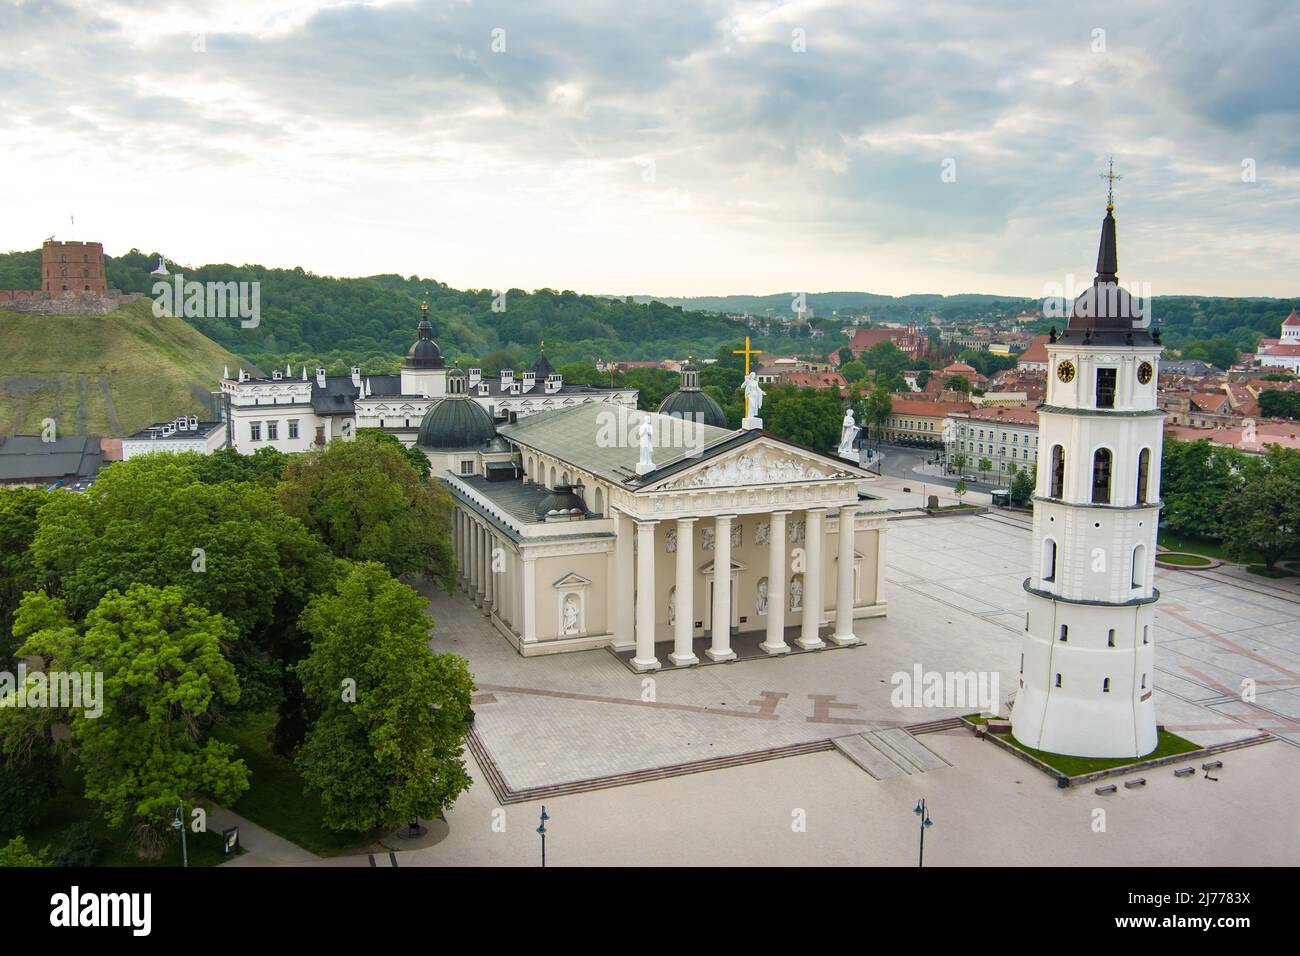 Luftaufnahme des Domplatzes, Hauptplatz der Altstadt von Vilnius, ein wichtiger Ort im öffentlichen Leben der Stadt, befindet sich an der Kreuzung der m Stockfoto